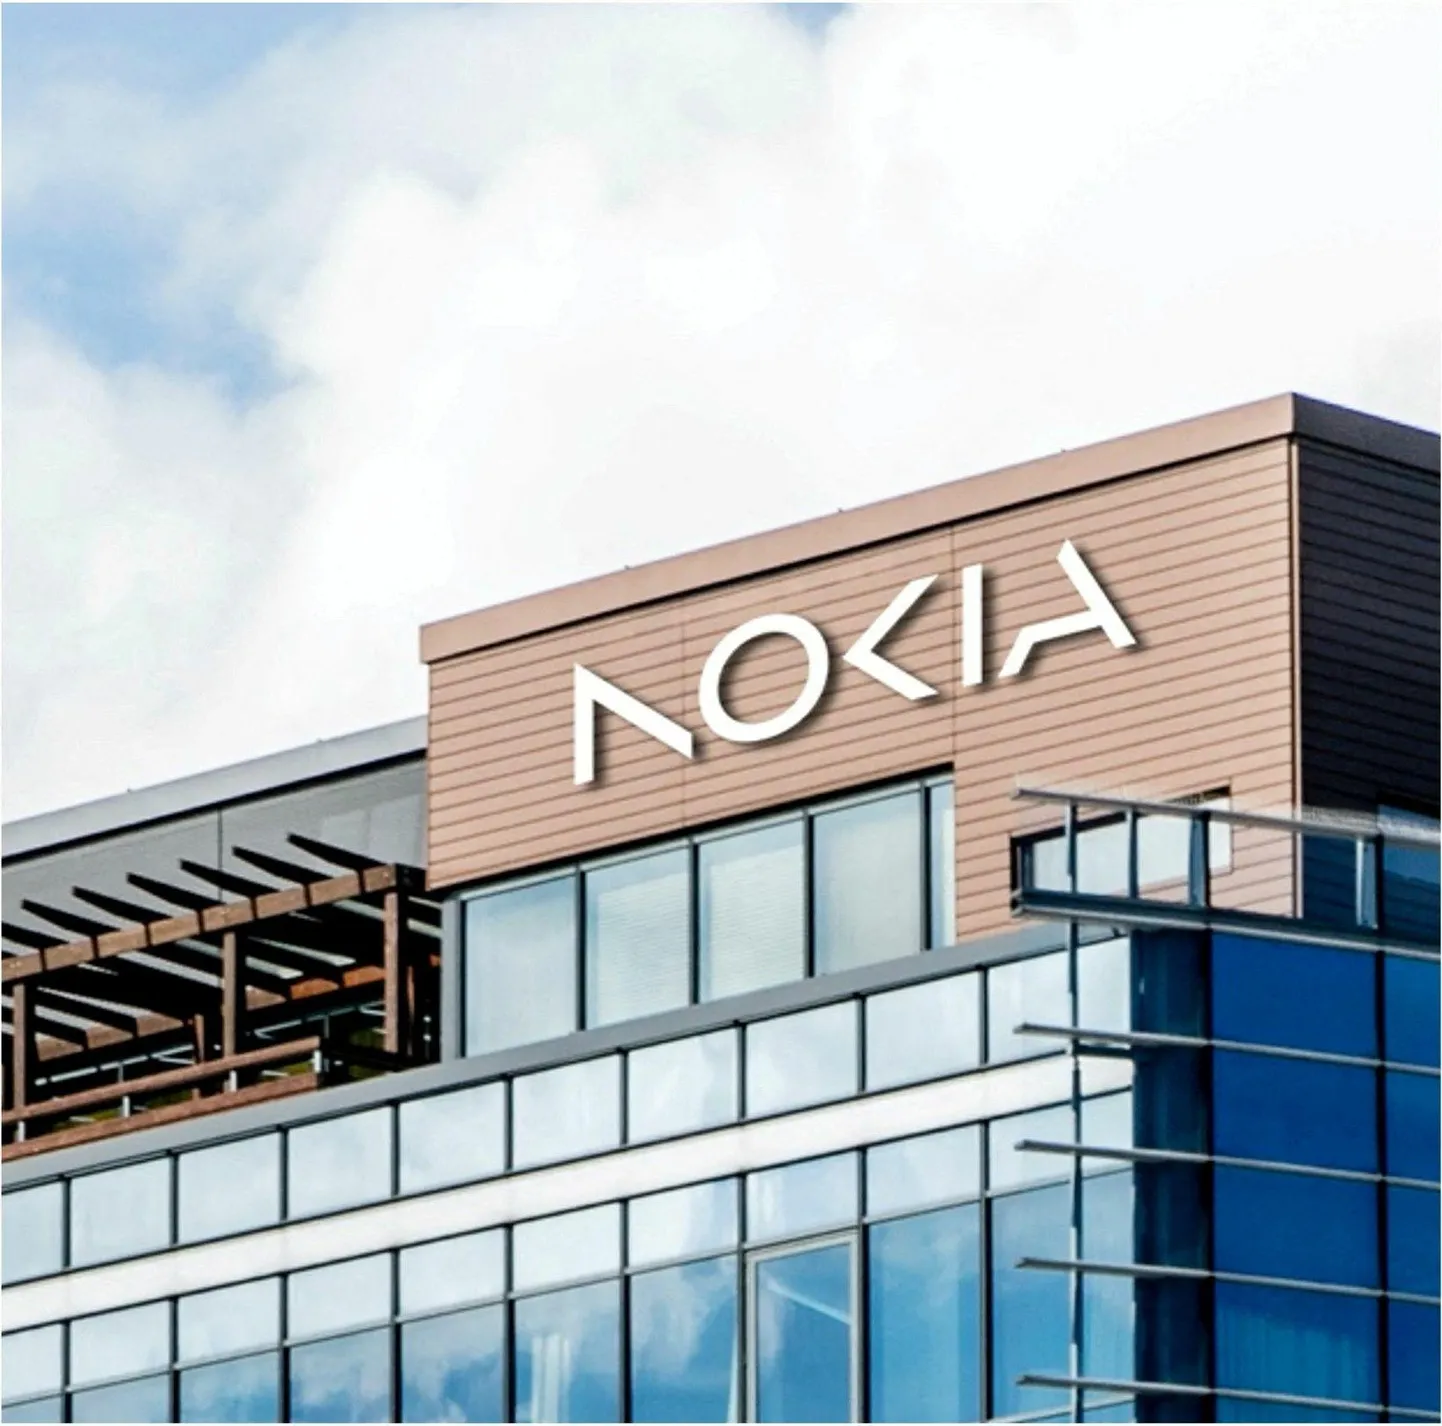 Nokia uus logo ettevõtte peakorteri kujutisel Espoos.